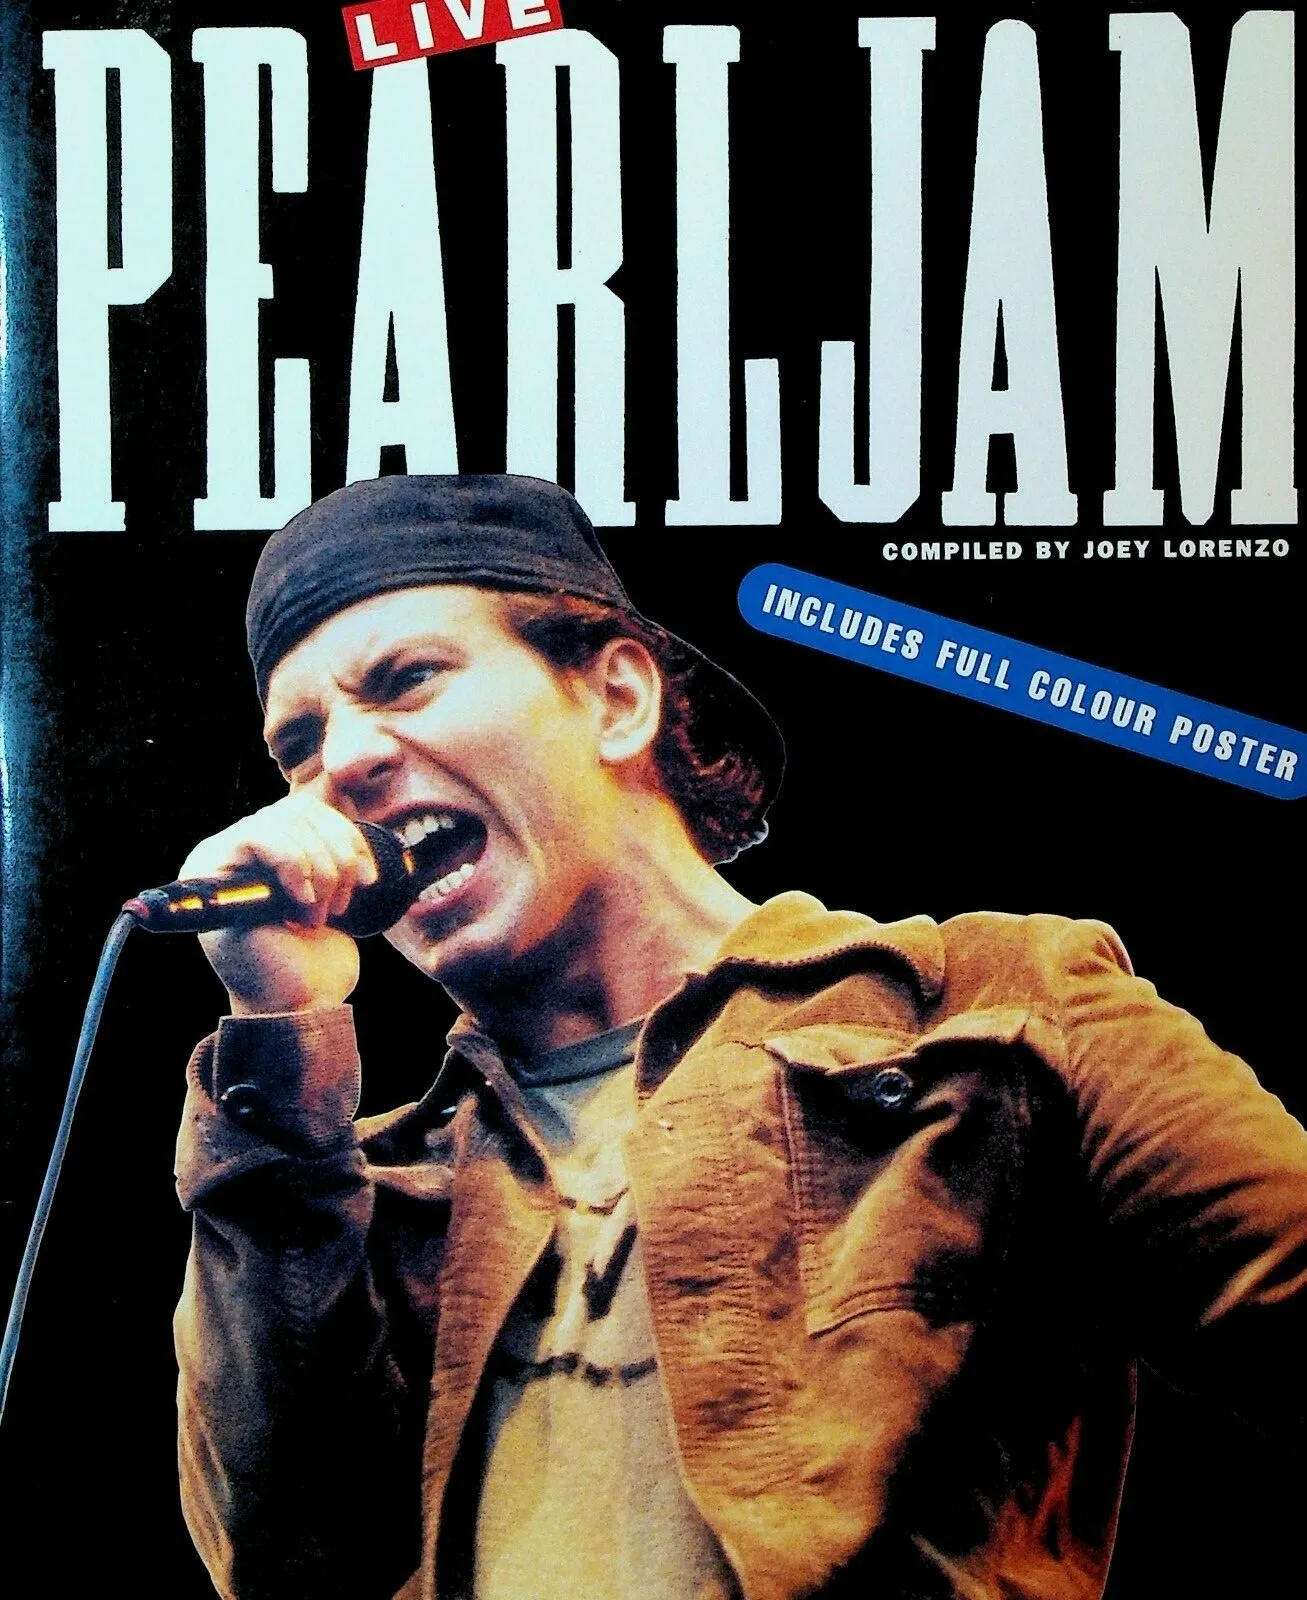 Live Pearl Jam by Joey Lorenzo SC Book 1994 Eddie Vedder